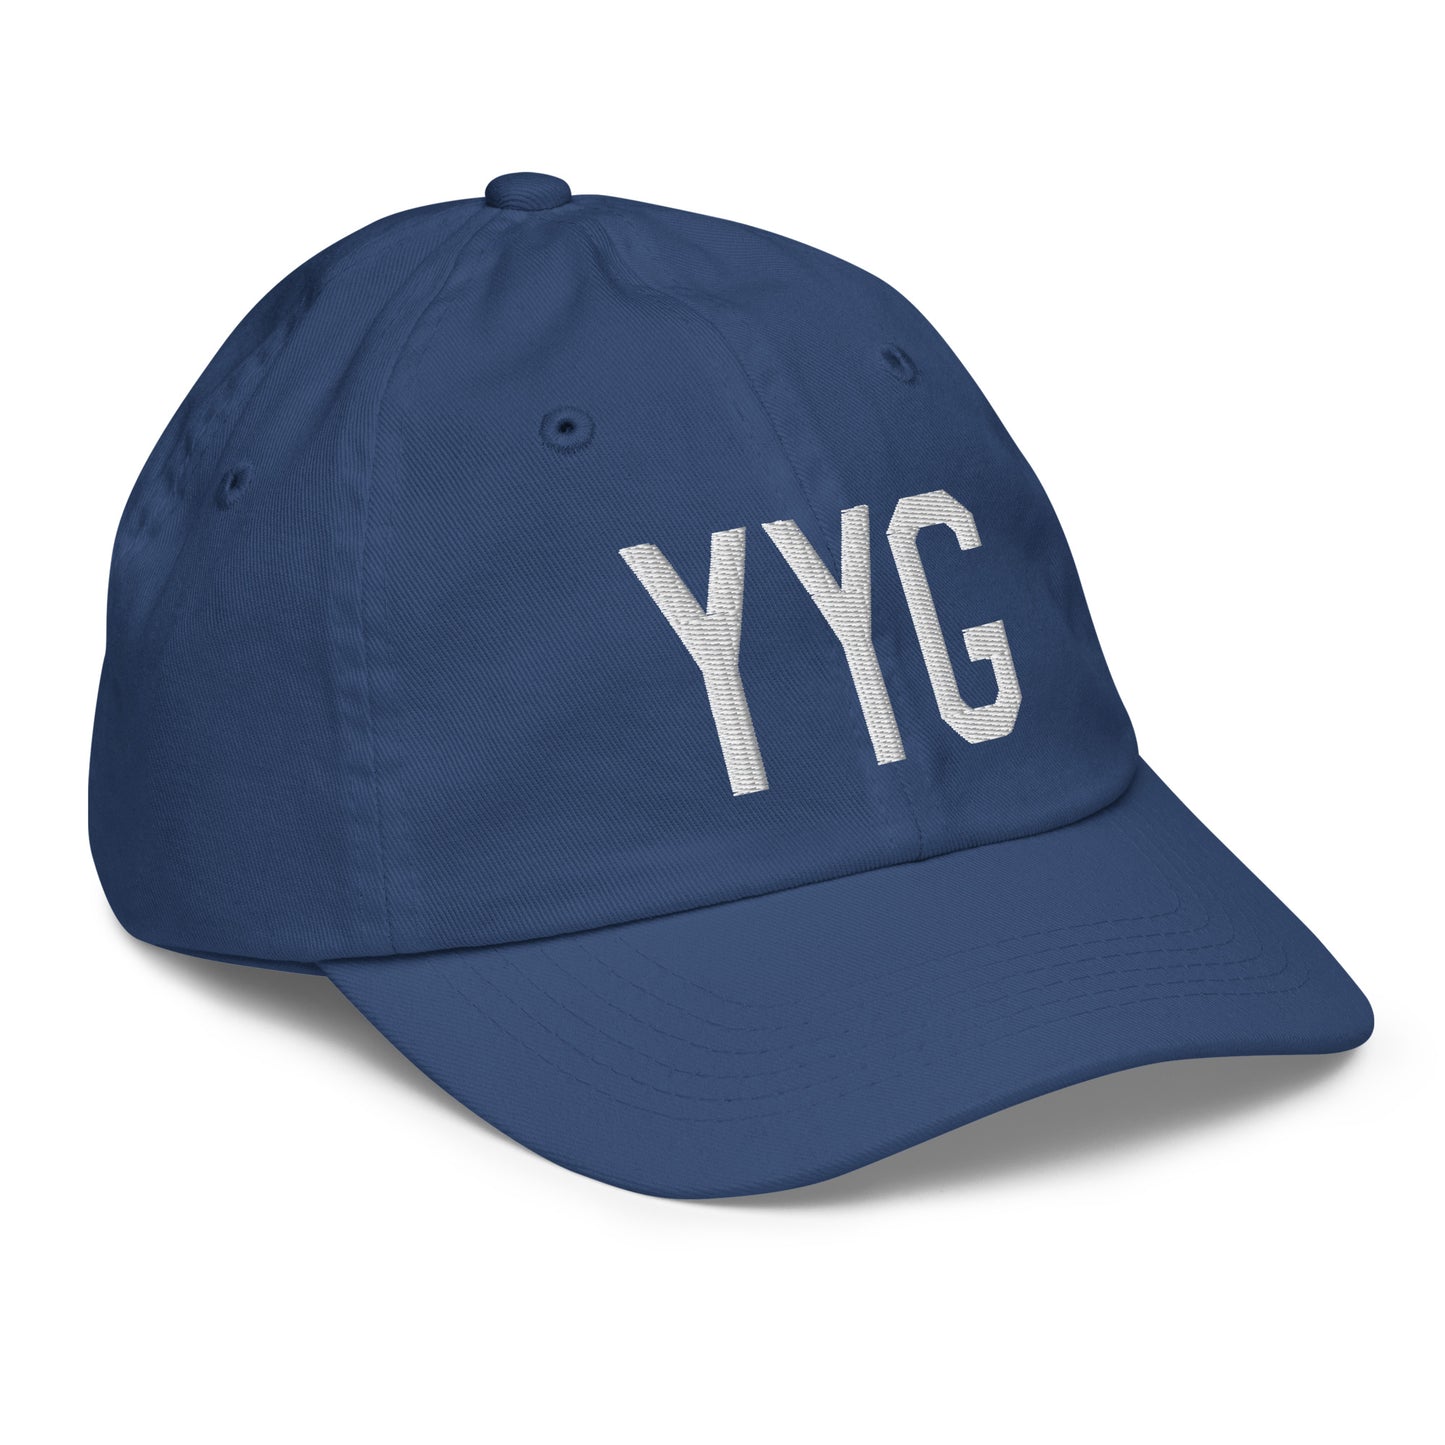 Airport Code Kid's Baseball Cap - White • YYG Charlottetown • YHM Designs - Image 21